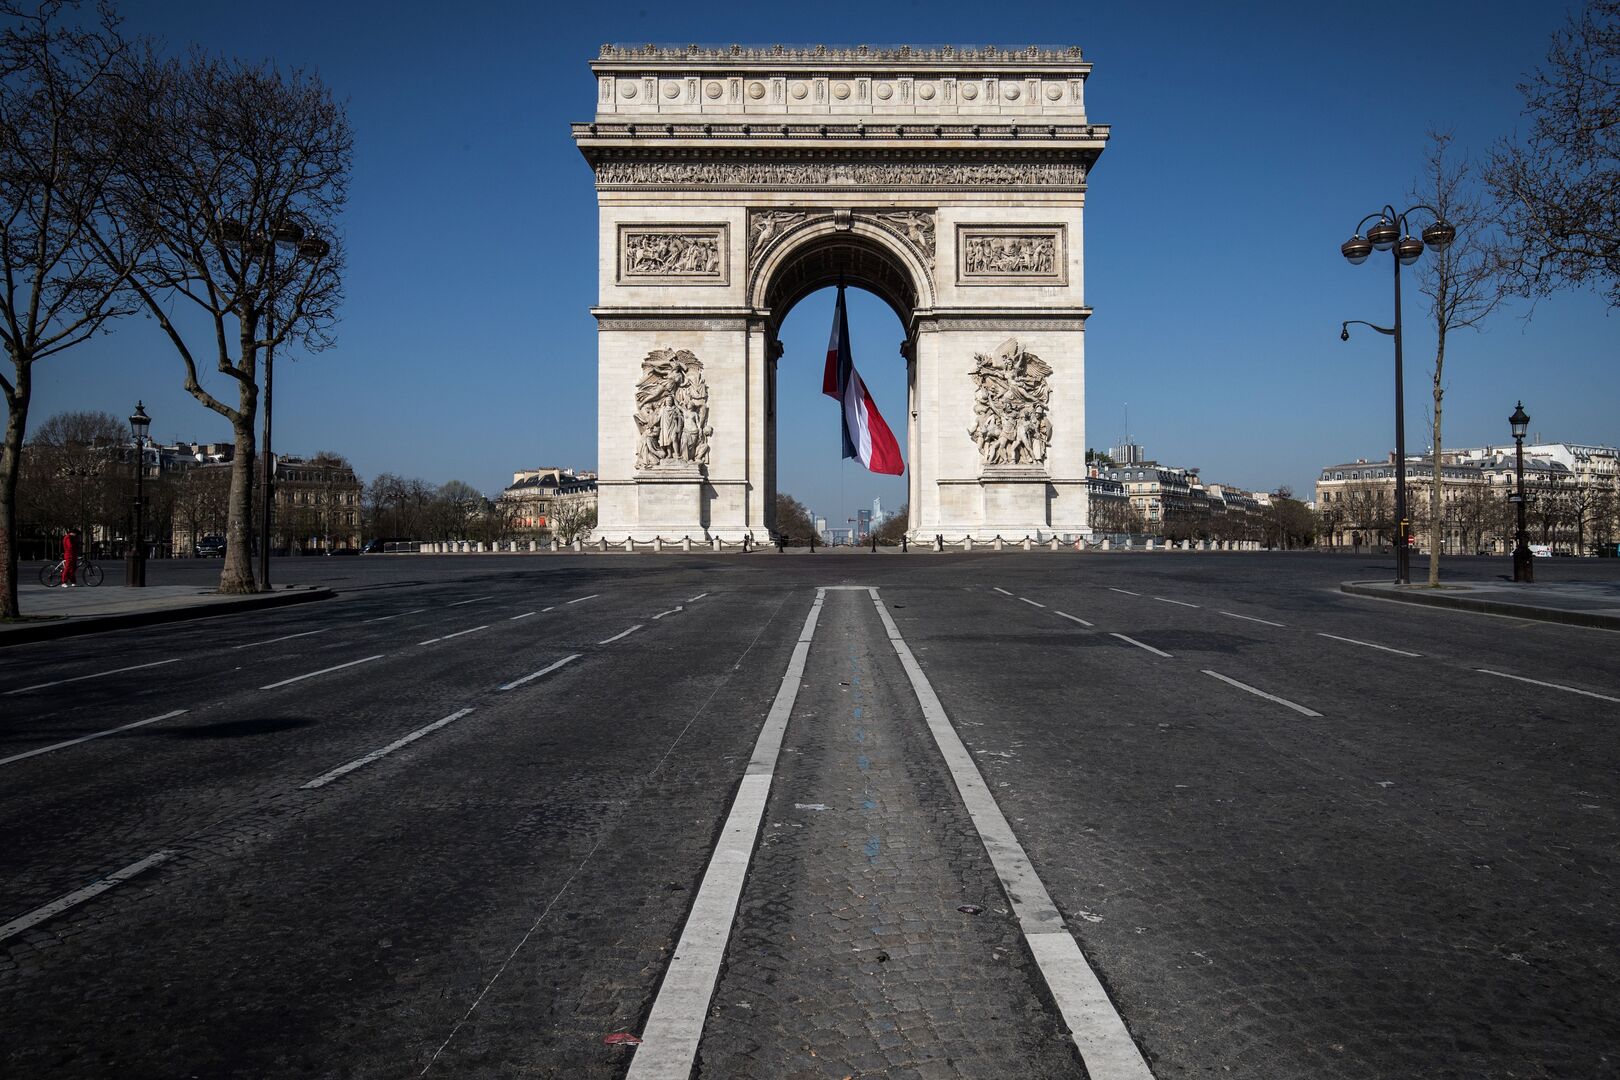 تسجيل 108 وفيات جديدة بفيروس كورونا في فرنسا خلال يوم